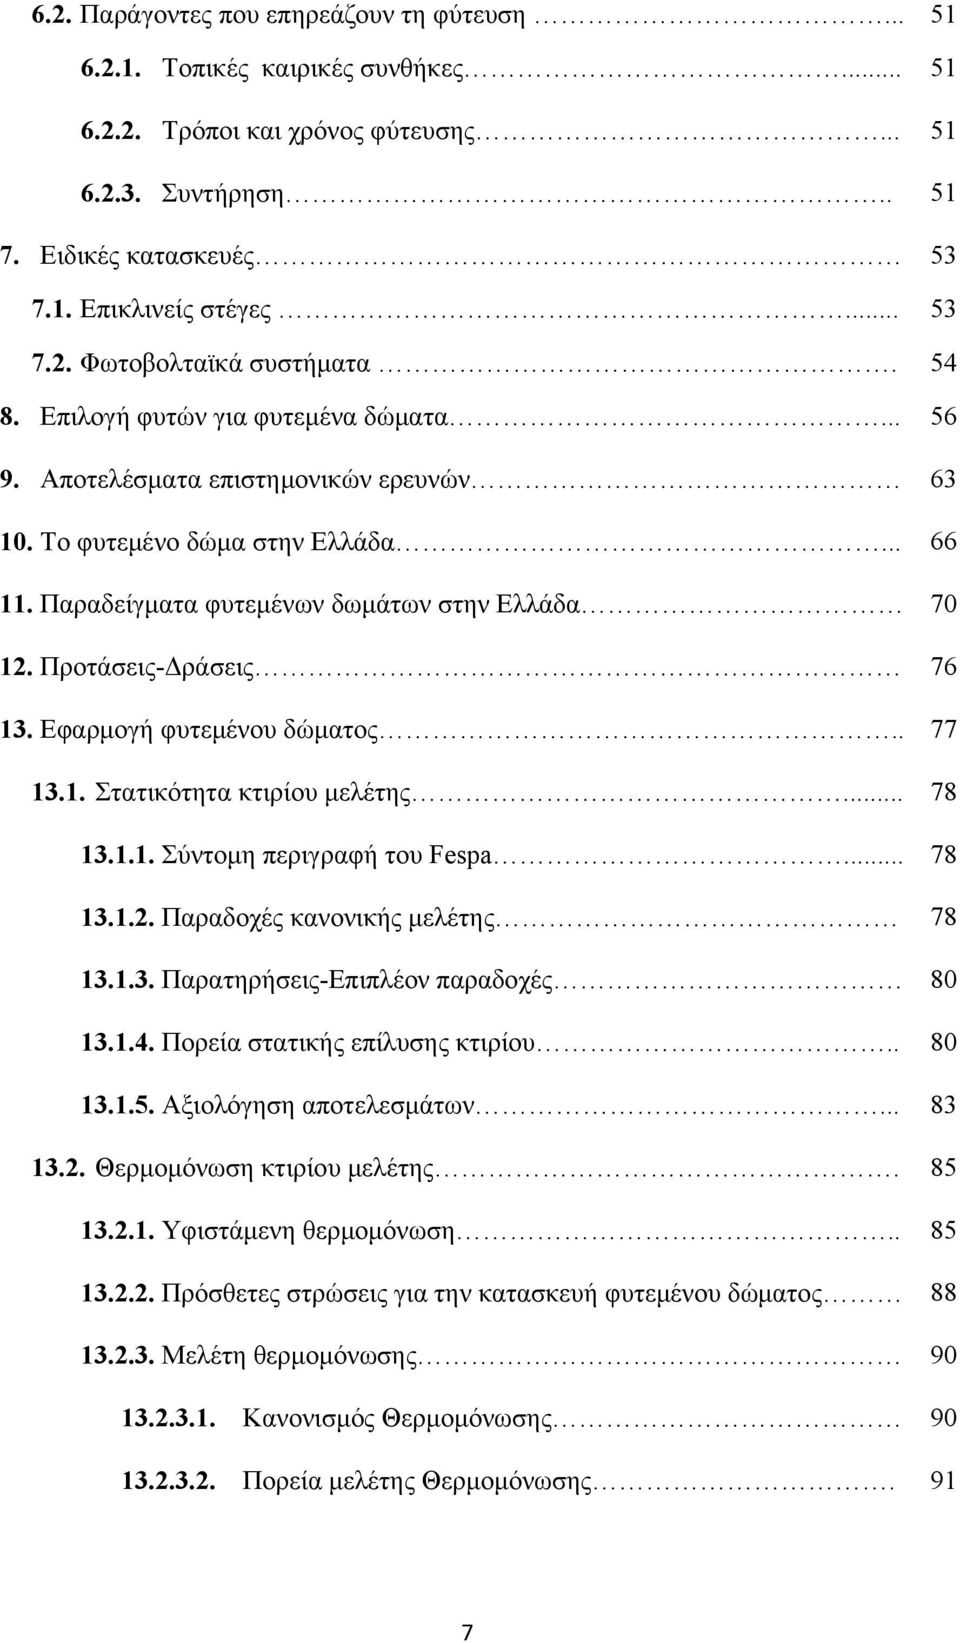 Παραδείγματα φυτεμένων δωμάτων στην Ελλάδα 70 12. Προτάσεις-Δράσεις 76 13. Εφαρμογή φυτεμένου δώματος.. 77 13.1. Στατικότητα κτιρίου μελέτης... 78 13.1.1. Σύντομη περιγραφή του Fespa... 78 13.1.2. Παραδοχές κανονικής μελέτης 78 13.